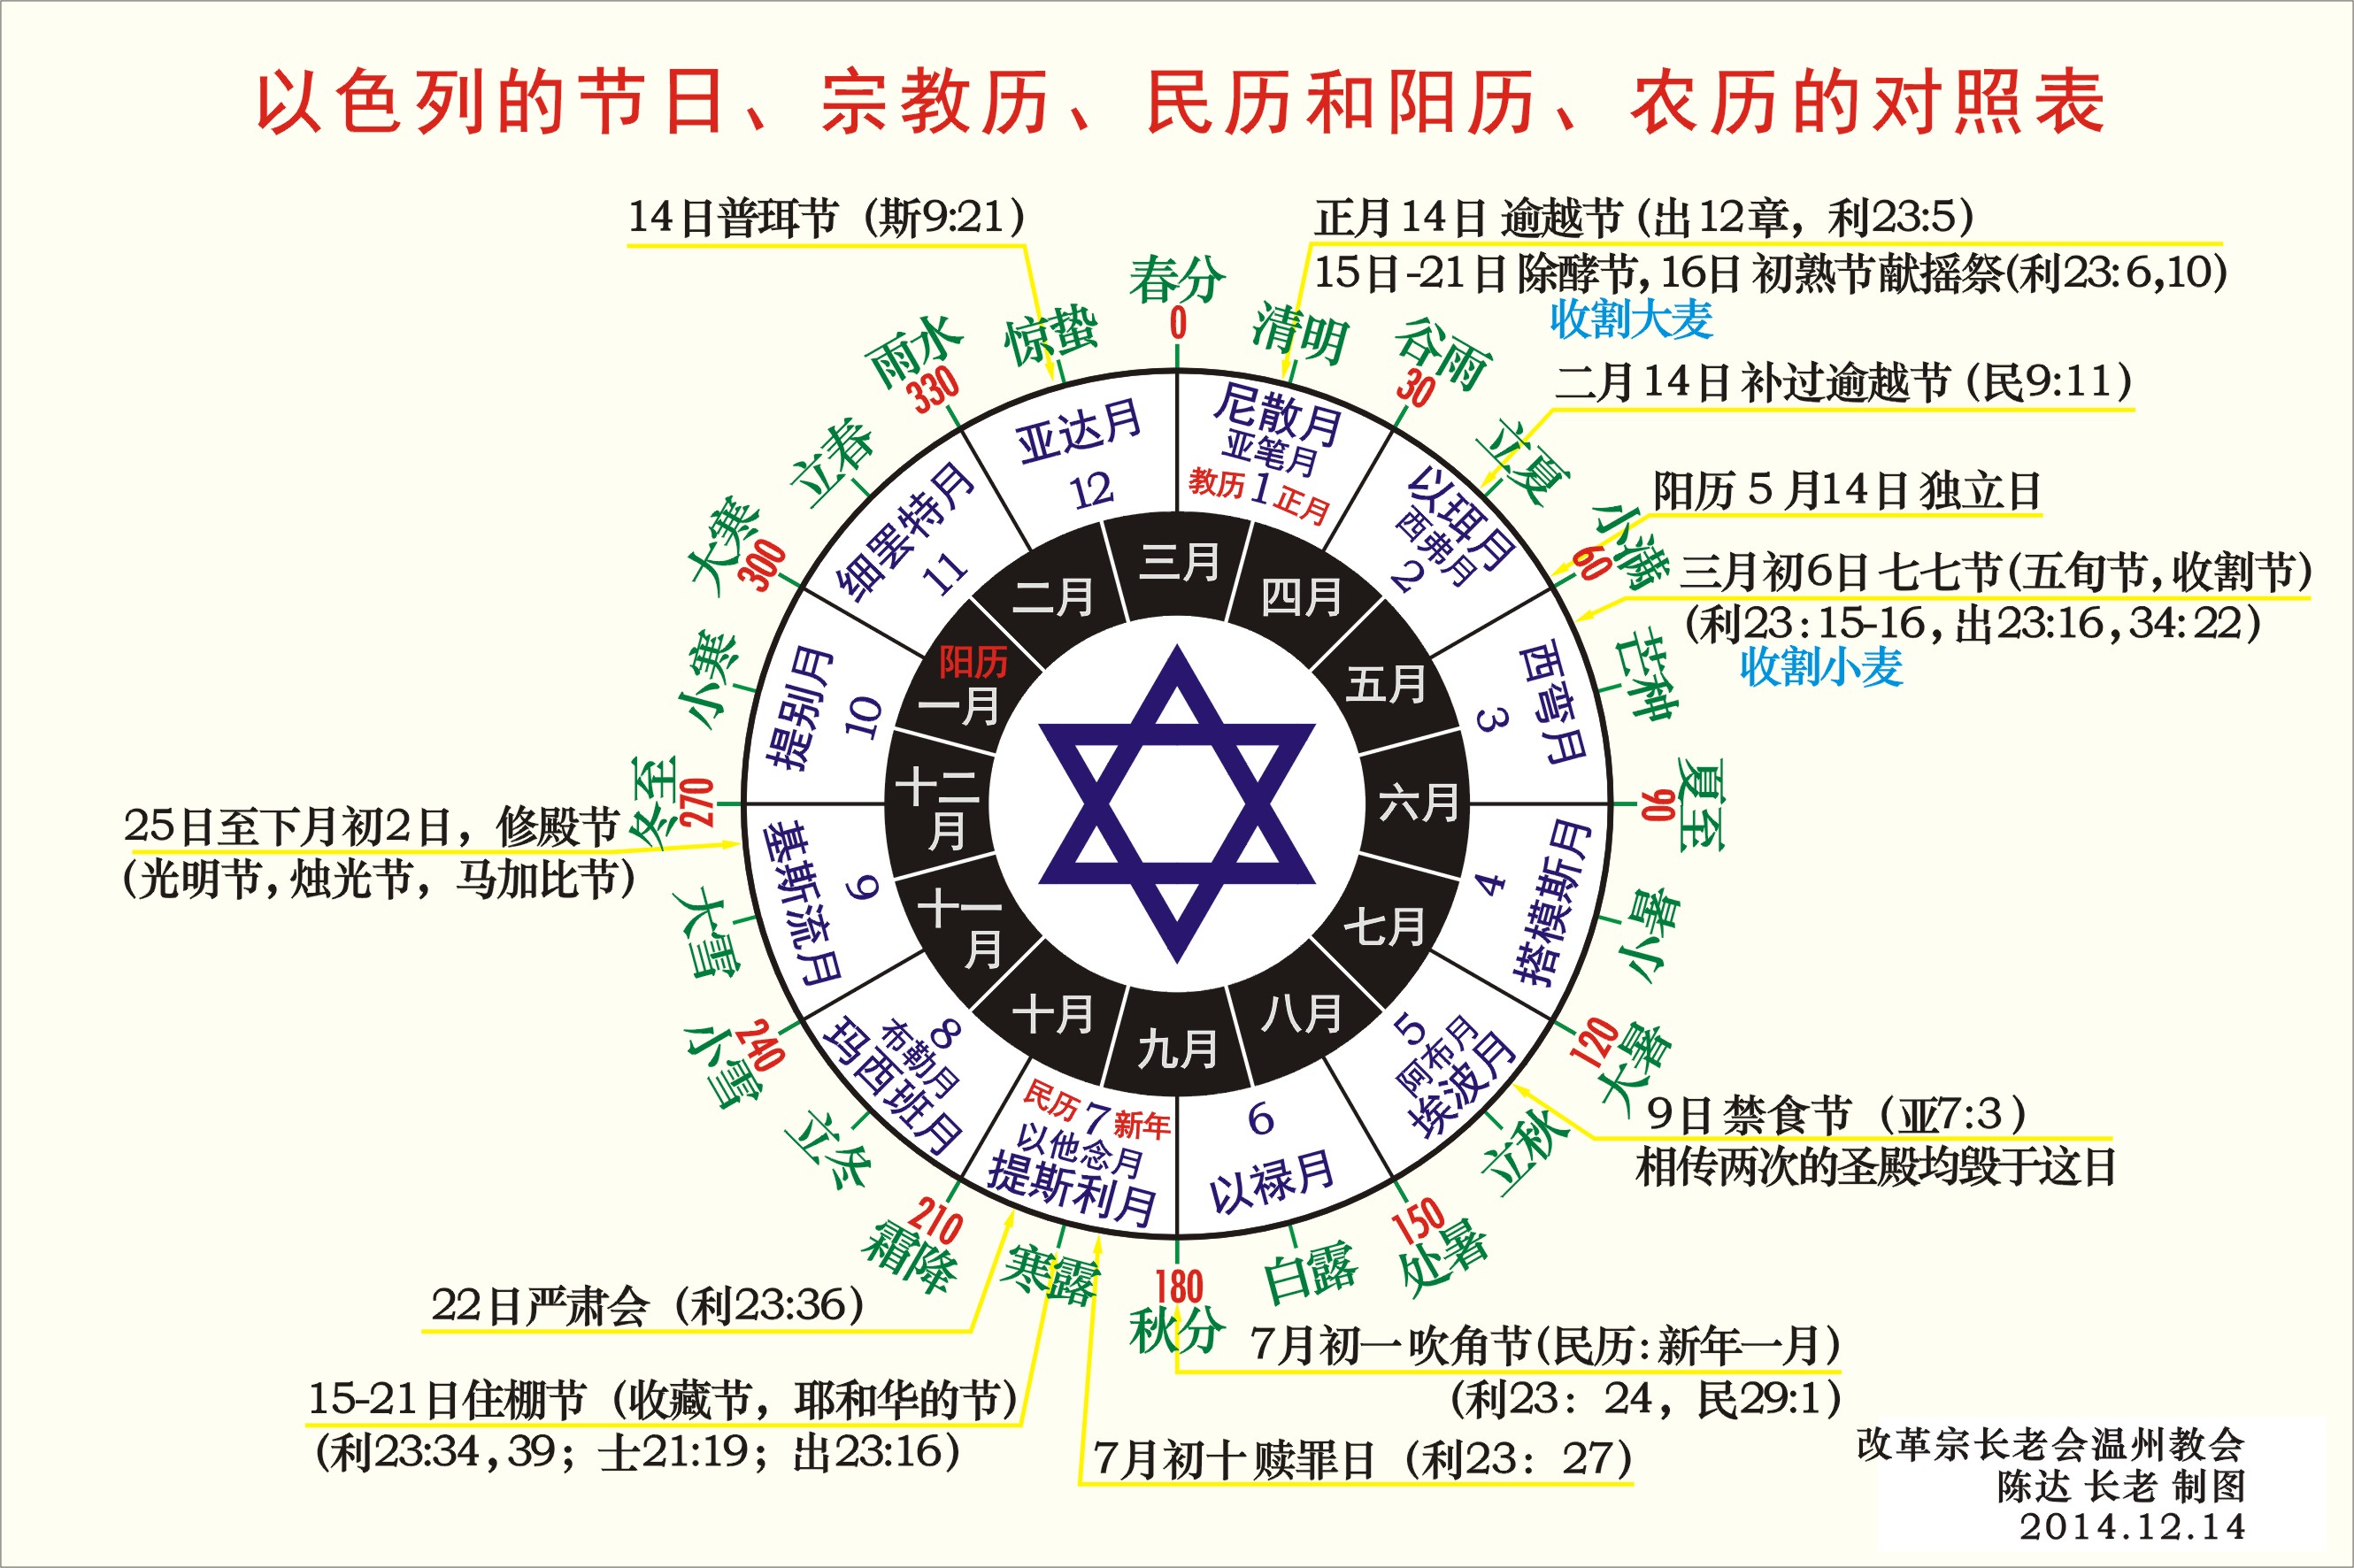 以色列的节日,以及宗教历民历和阳历中国的农历的对照表.jpg